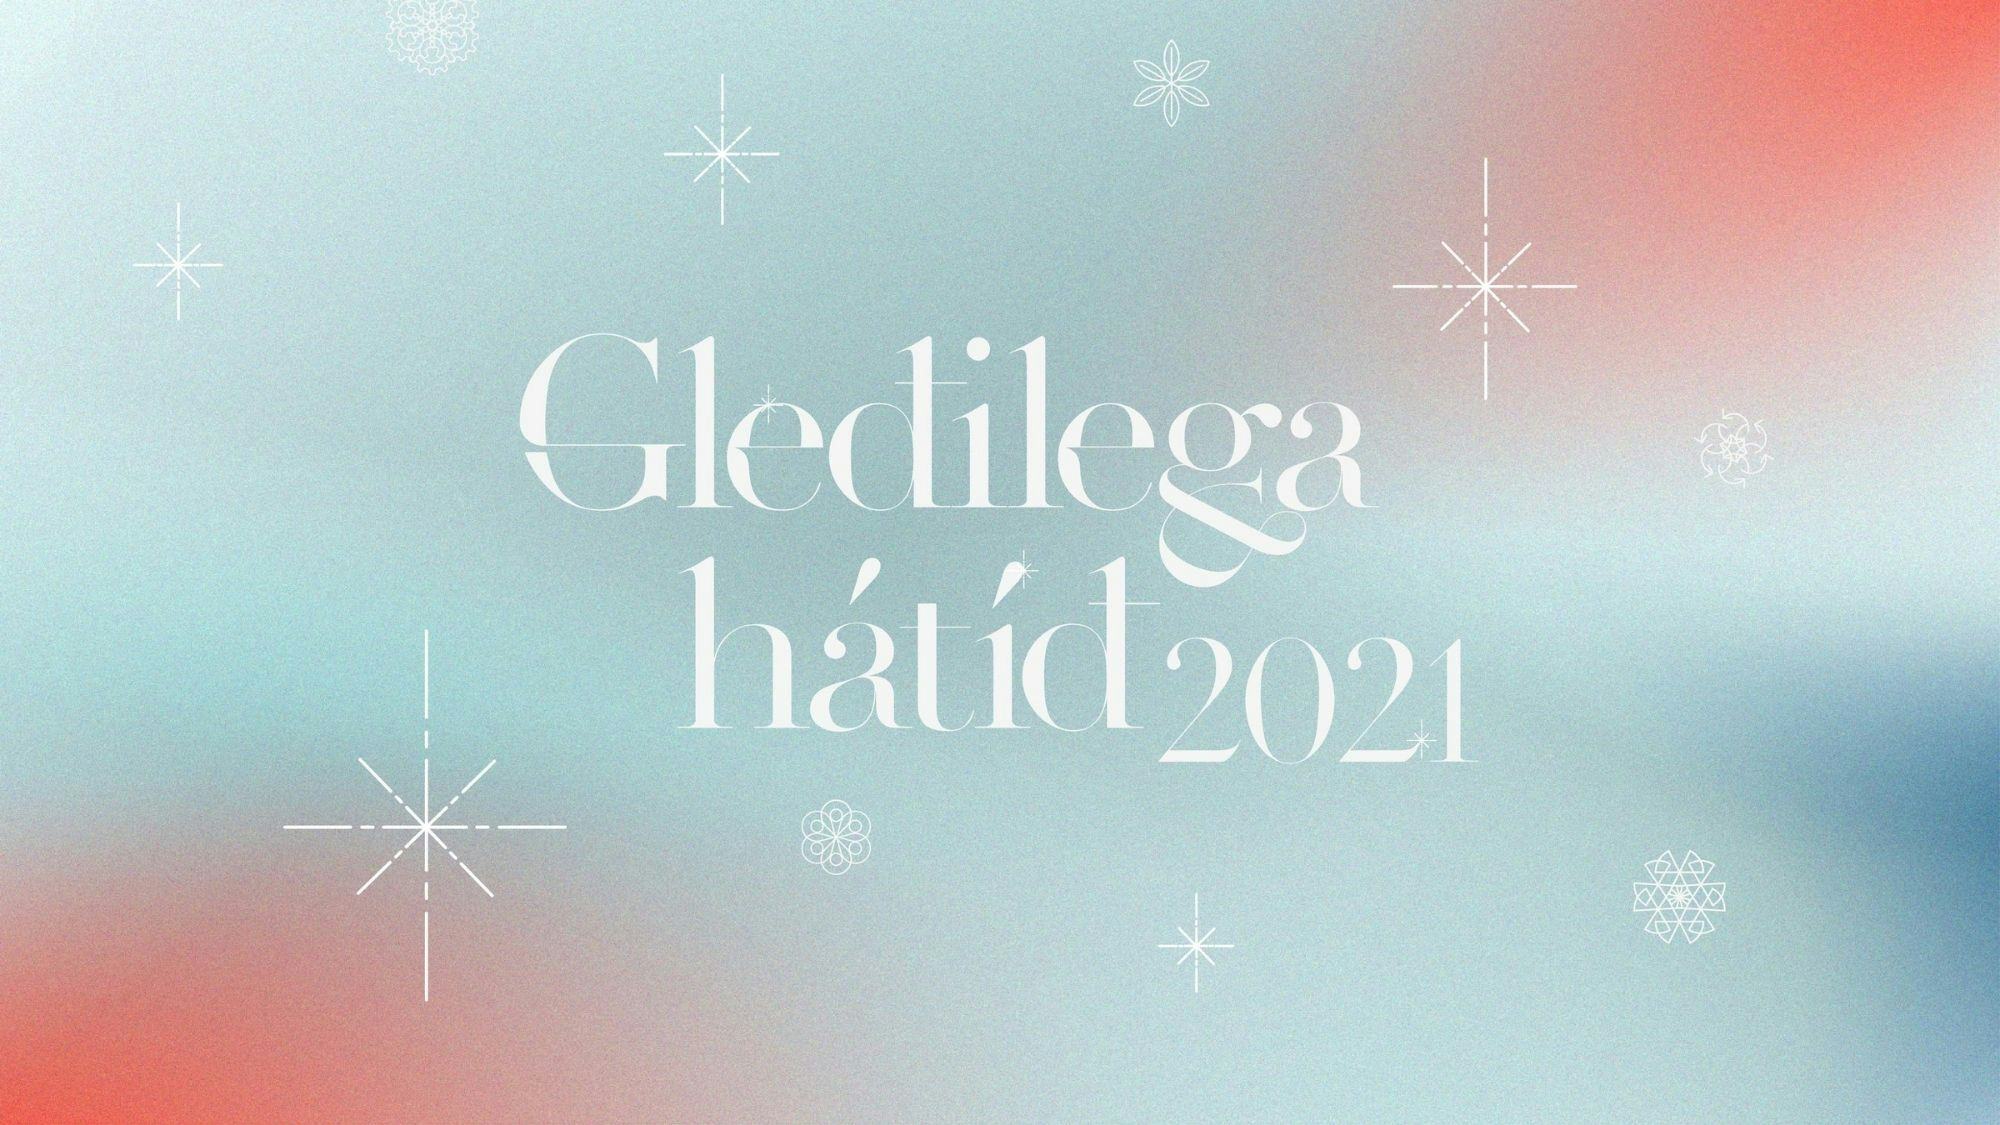 A graphic with text "Gleðilega hátíð 2021"